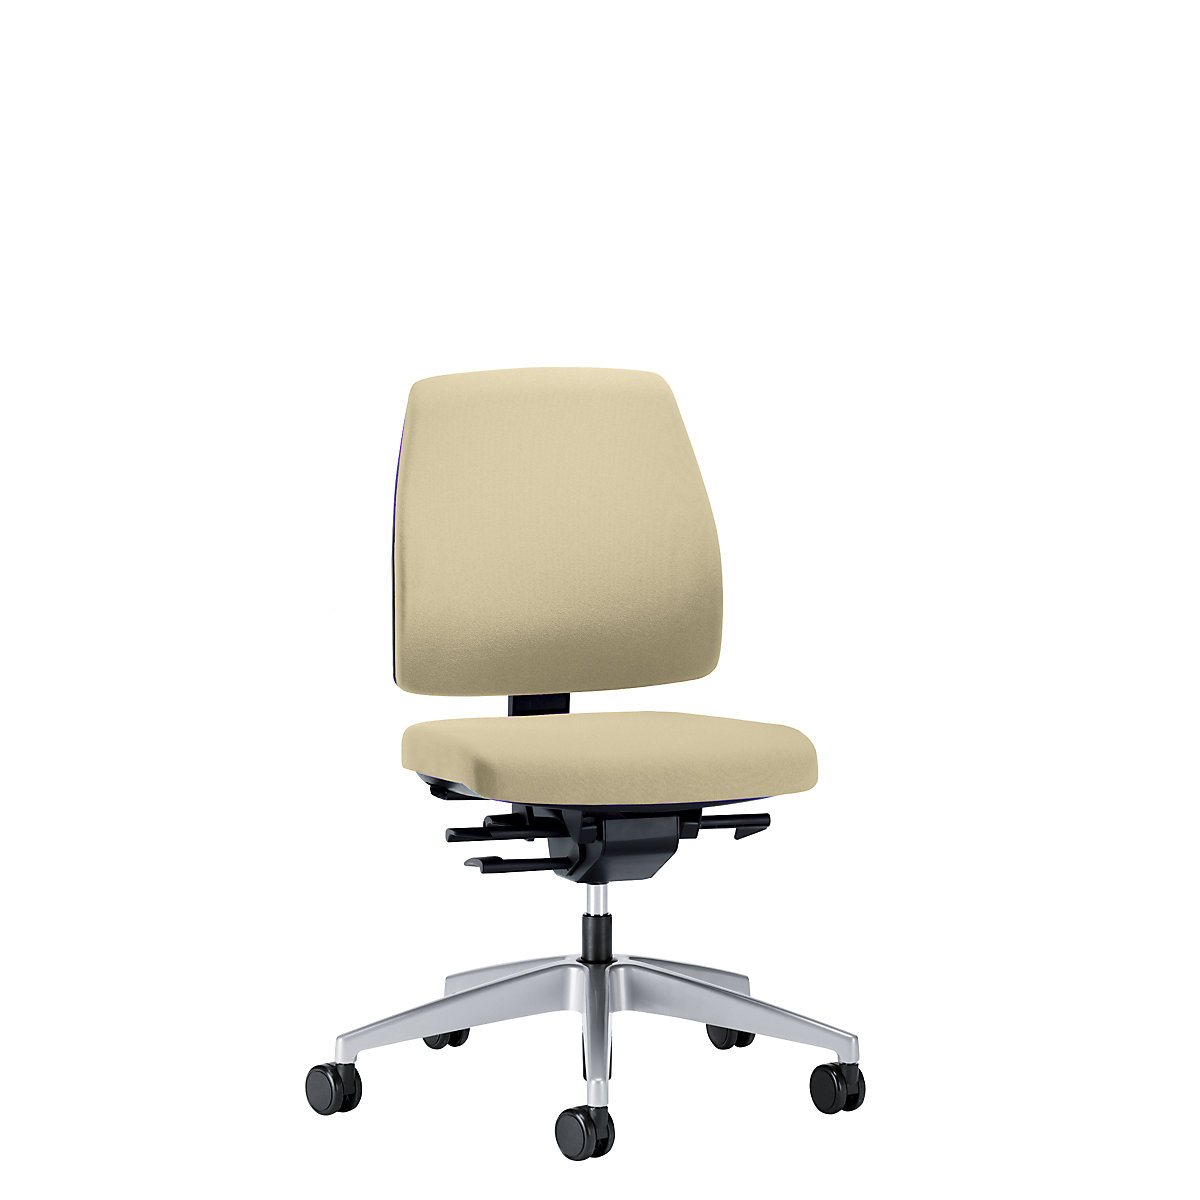 Bürodrehstuhl GOAL, Rückenlehnenhöhe 430 mm interstuhl, Gestell brillantsilber, mit weichen Rollen, beige, Sitztiefe 410 mm-6